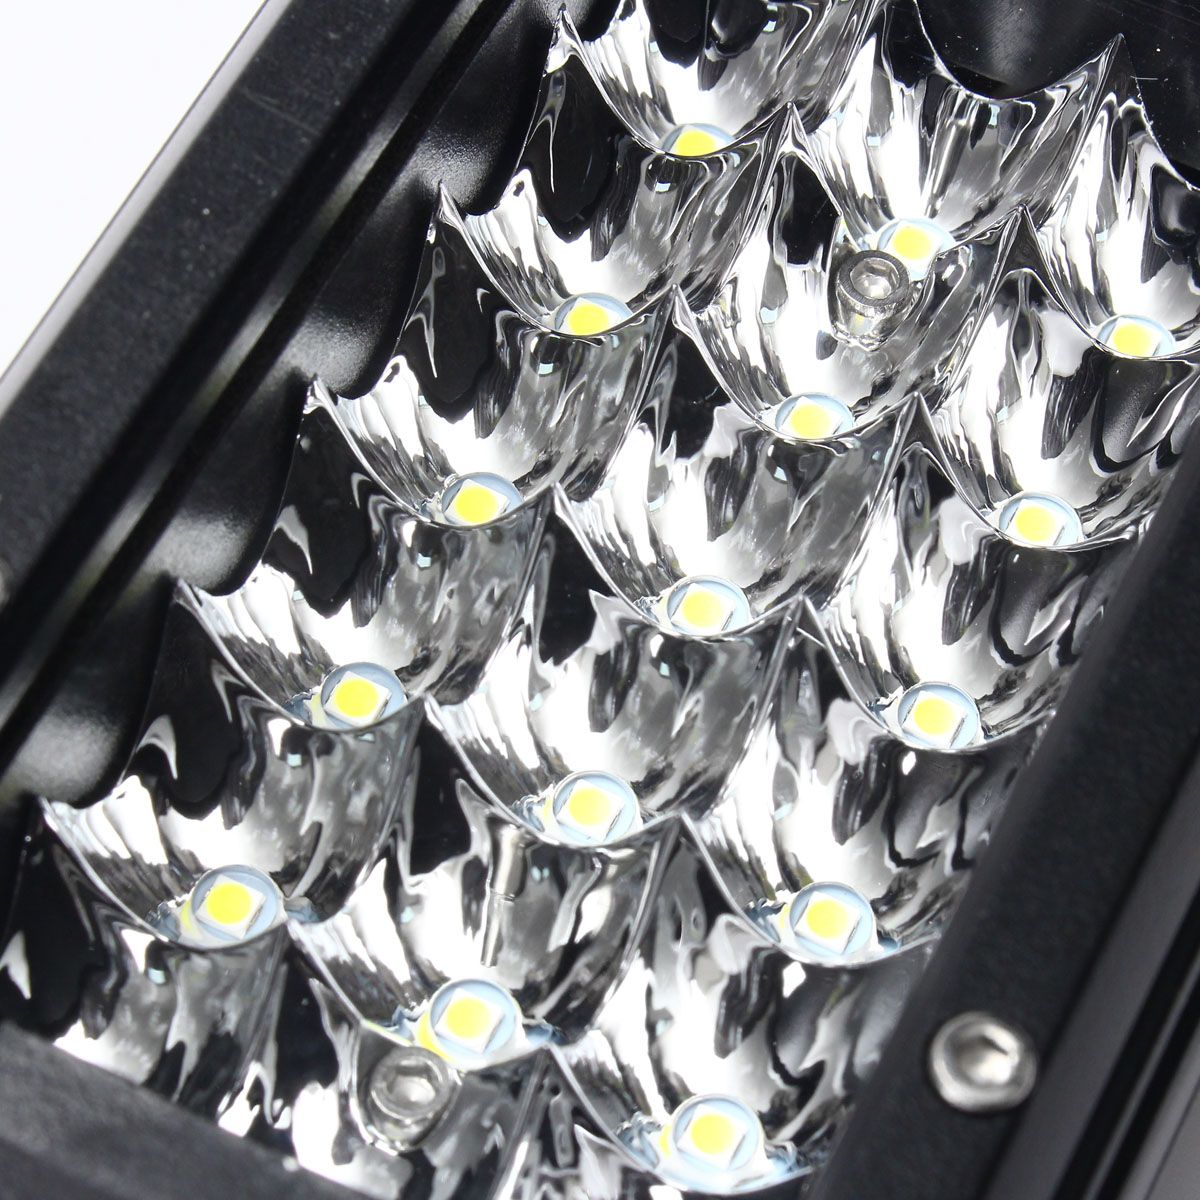 5-pouces-36W-LED-barre-lumineuse-de-travail-faisceau-de-tache-IP67-10-30V-Super-blanc-2-piegraveces--1414092